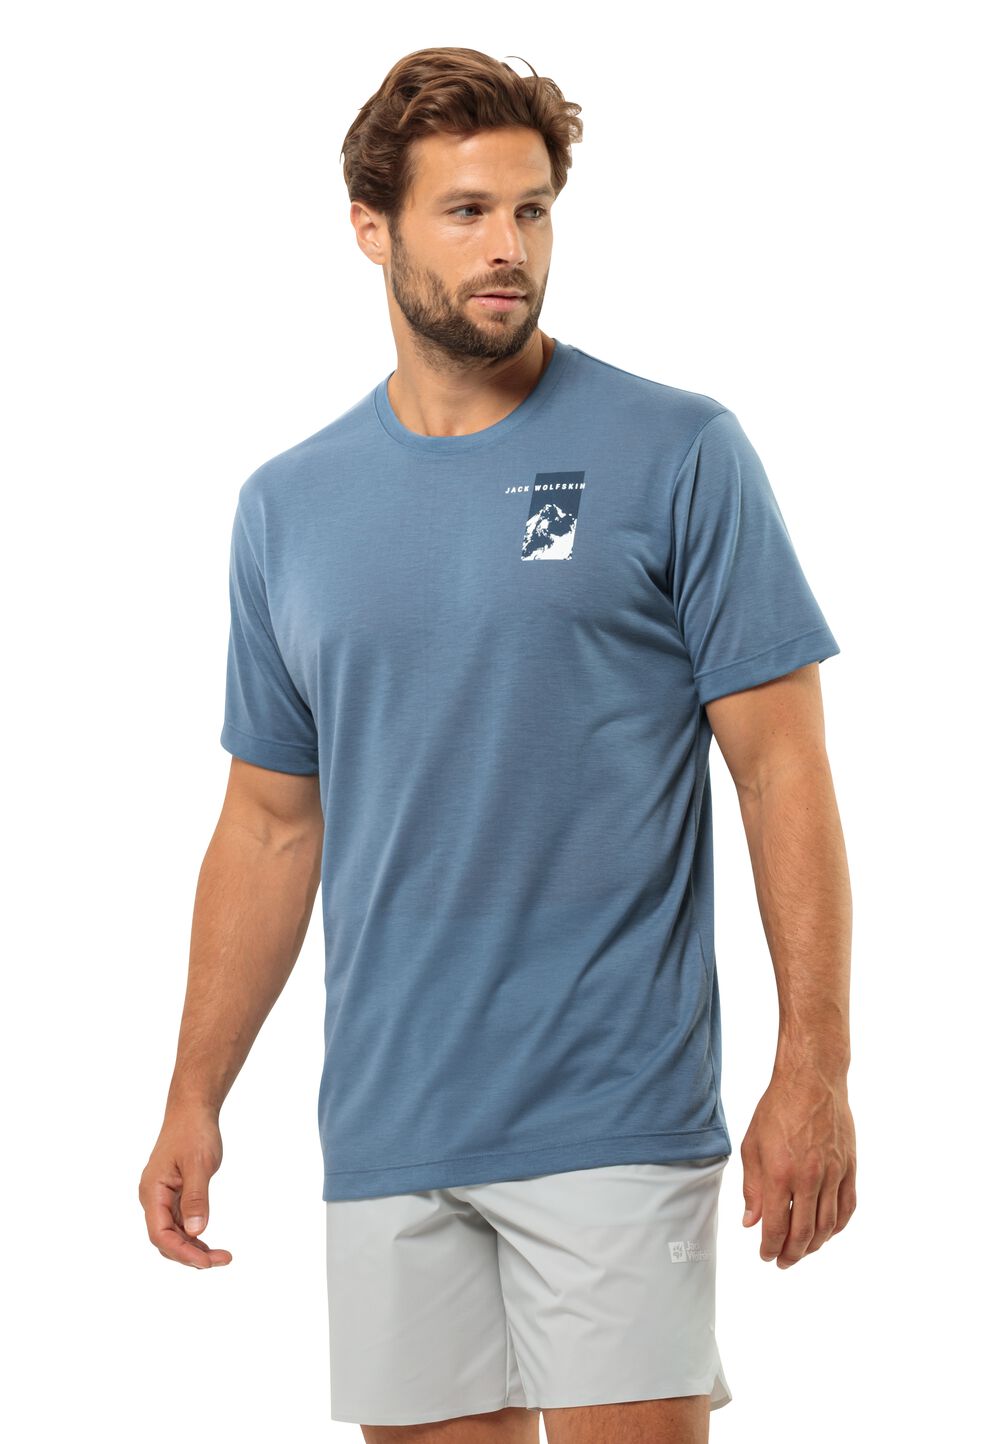 Jack Wolfskin Funktionsshirt Herren Vonnan S/S Graphic T-Shirt Men XL elemental blue elemental blue von Jack Wolfskin